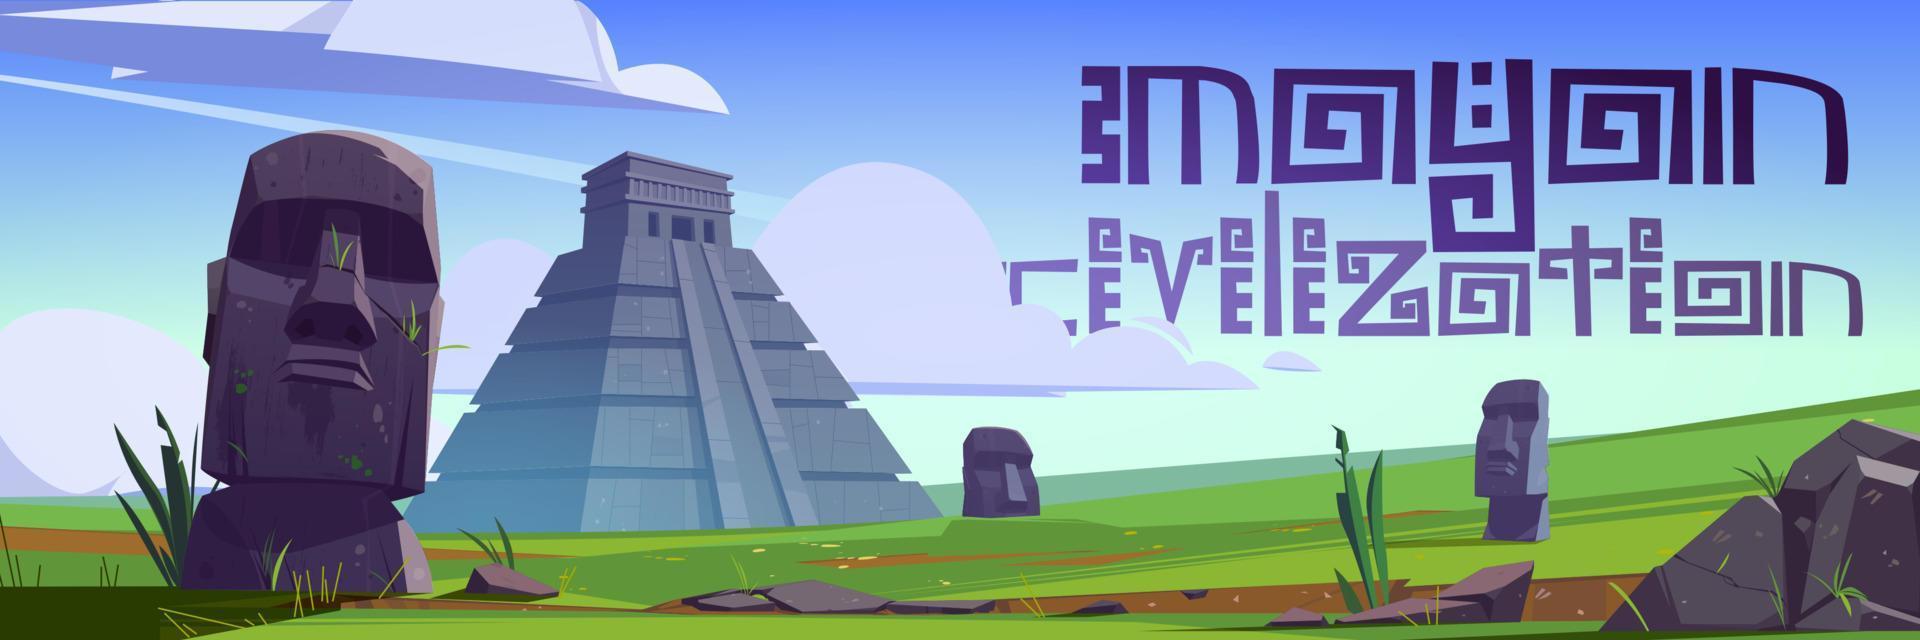 mayan beschaving oriëntatiepunten en moai standbeelden vector